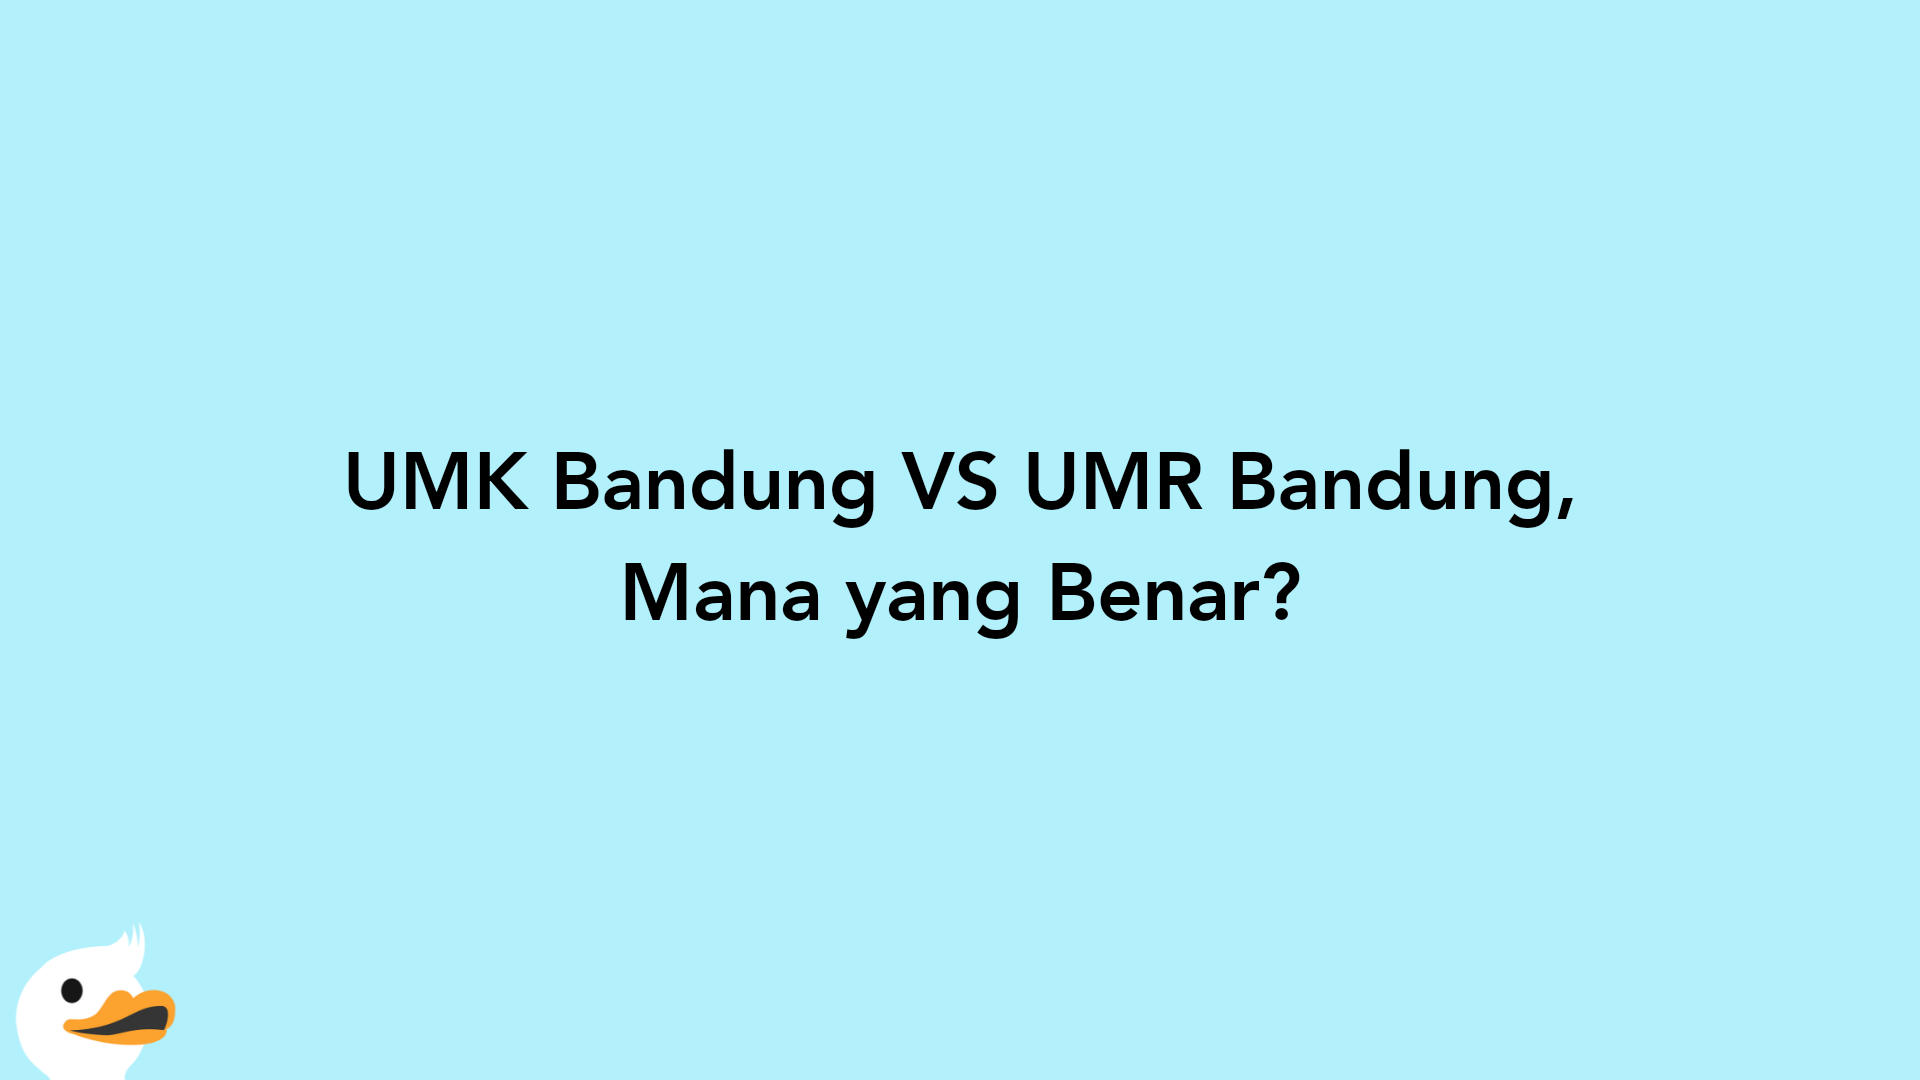 UMK Bandung VS UMR Bandung, Mana yang Benar?